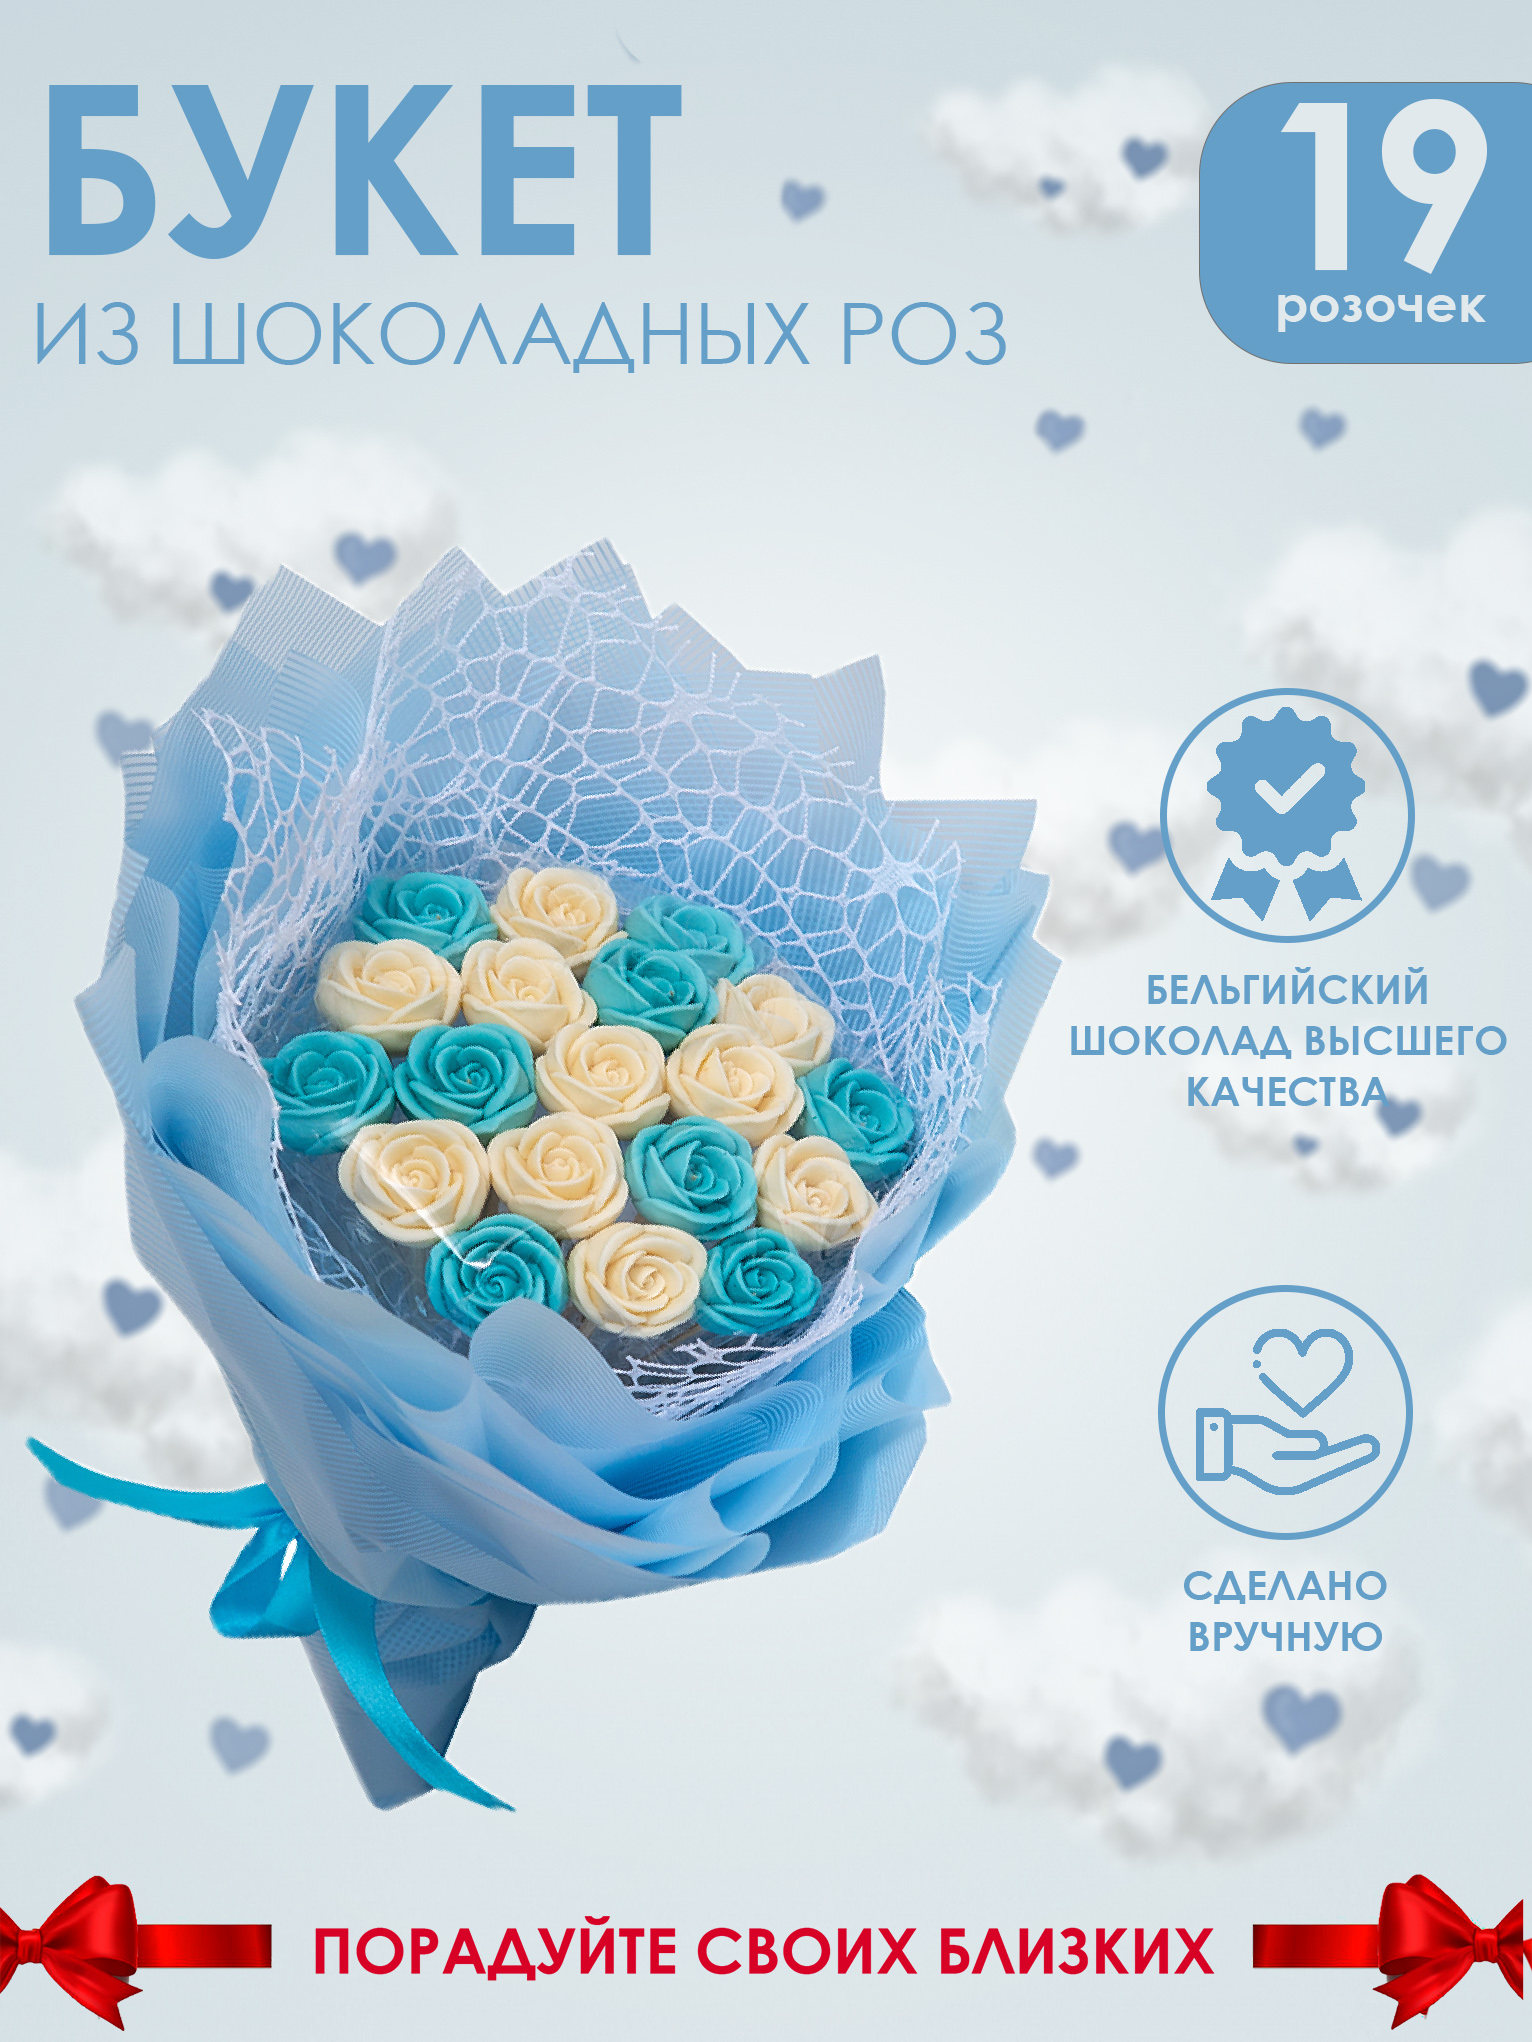 Шоколадный букет Звездный сюрприз из 19 роз, голубой